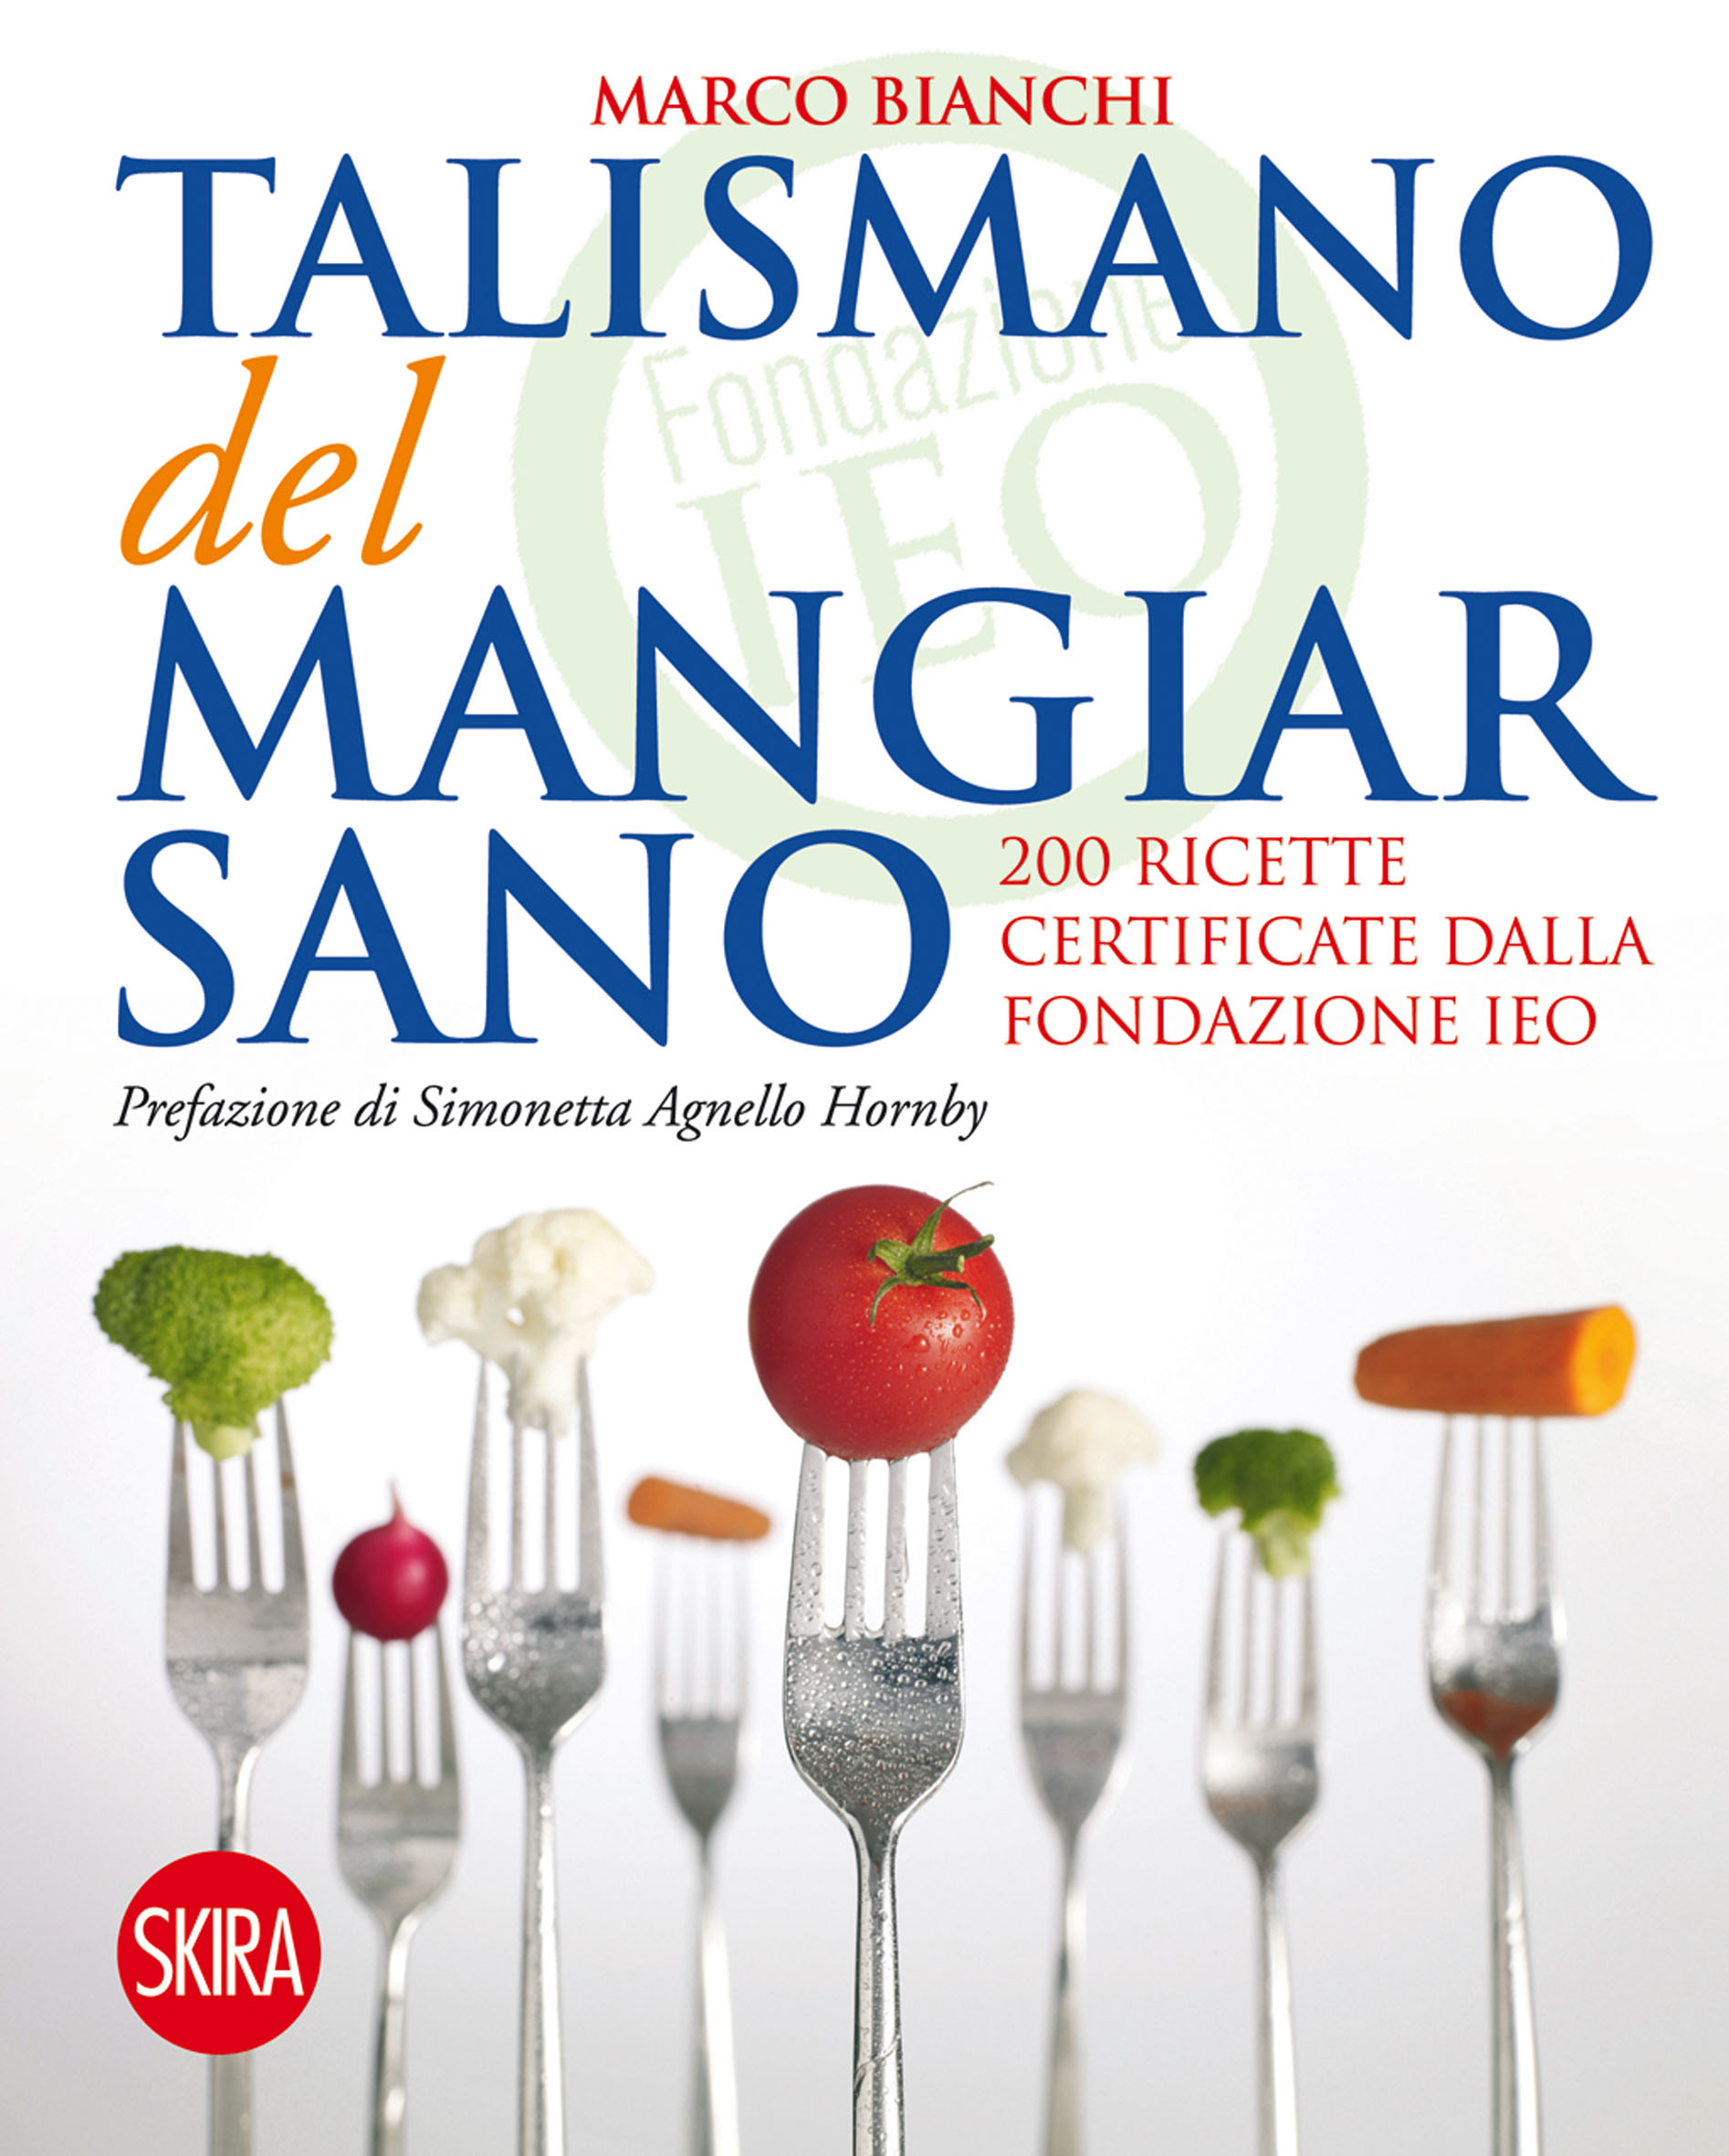 "Il talismano del mangiar sano", il libro sull'importanza di una corretta alimentazione